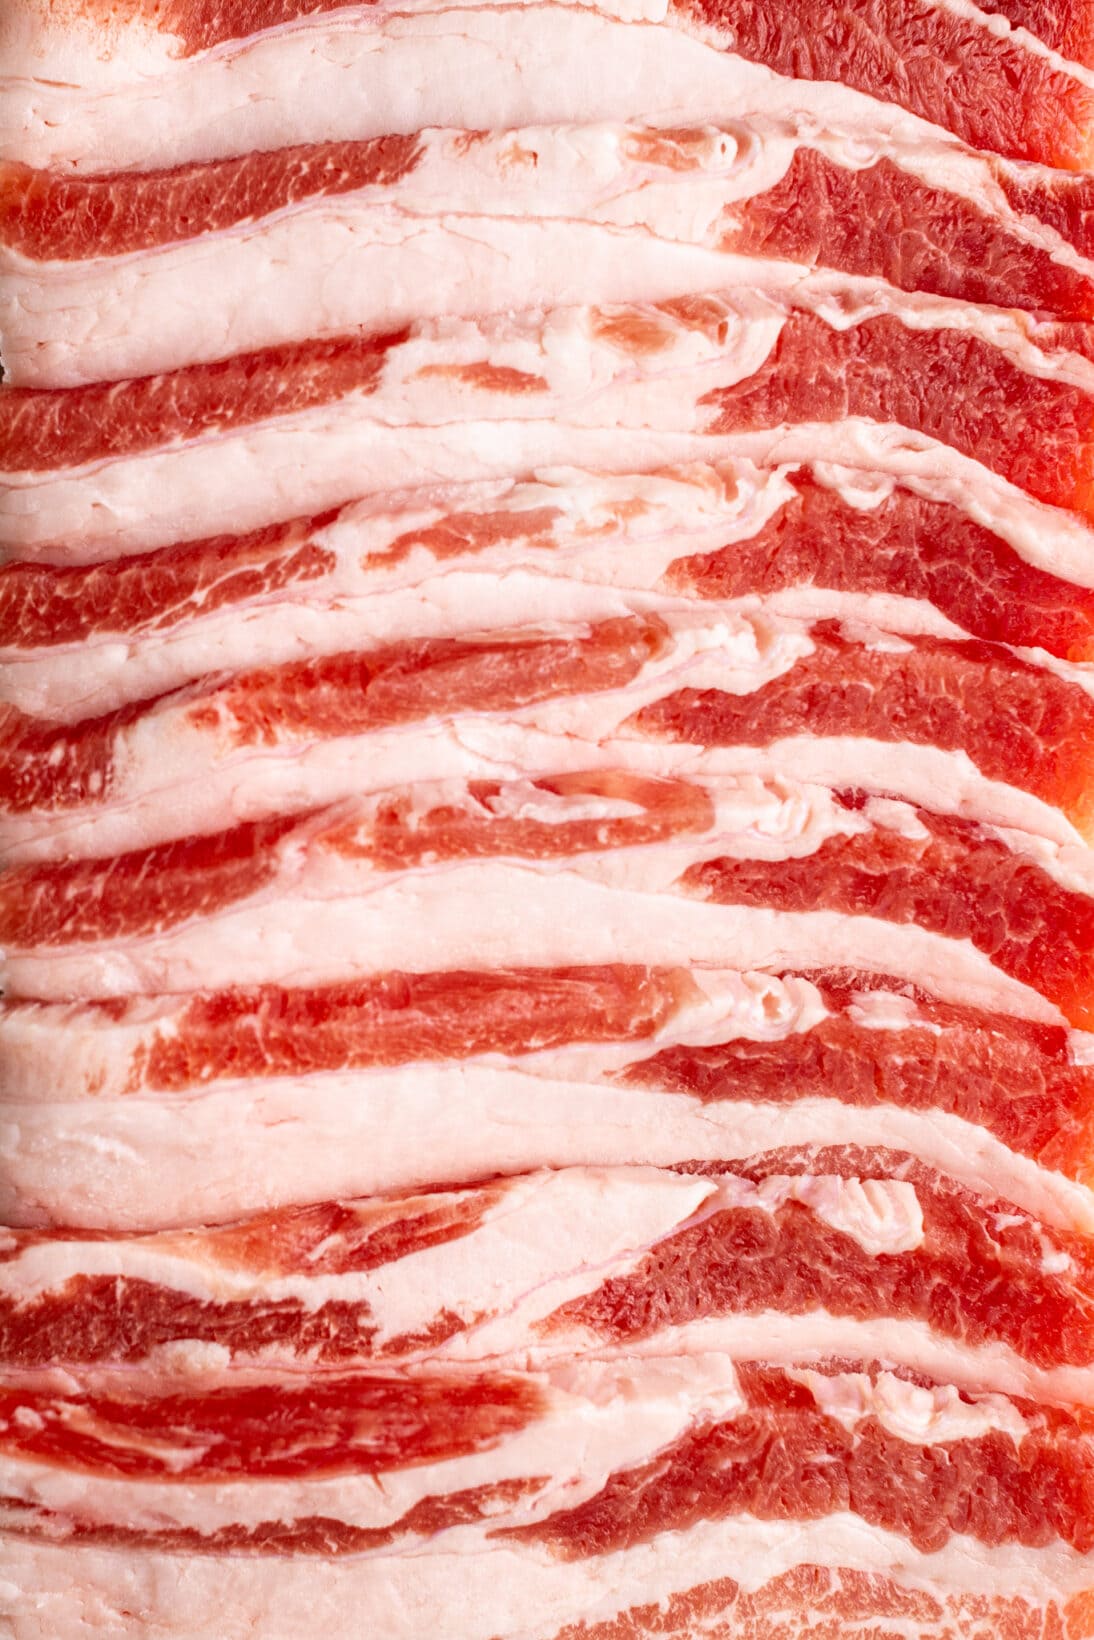 raw thin cut pork belly